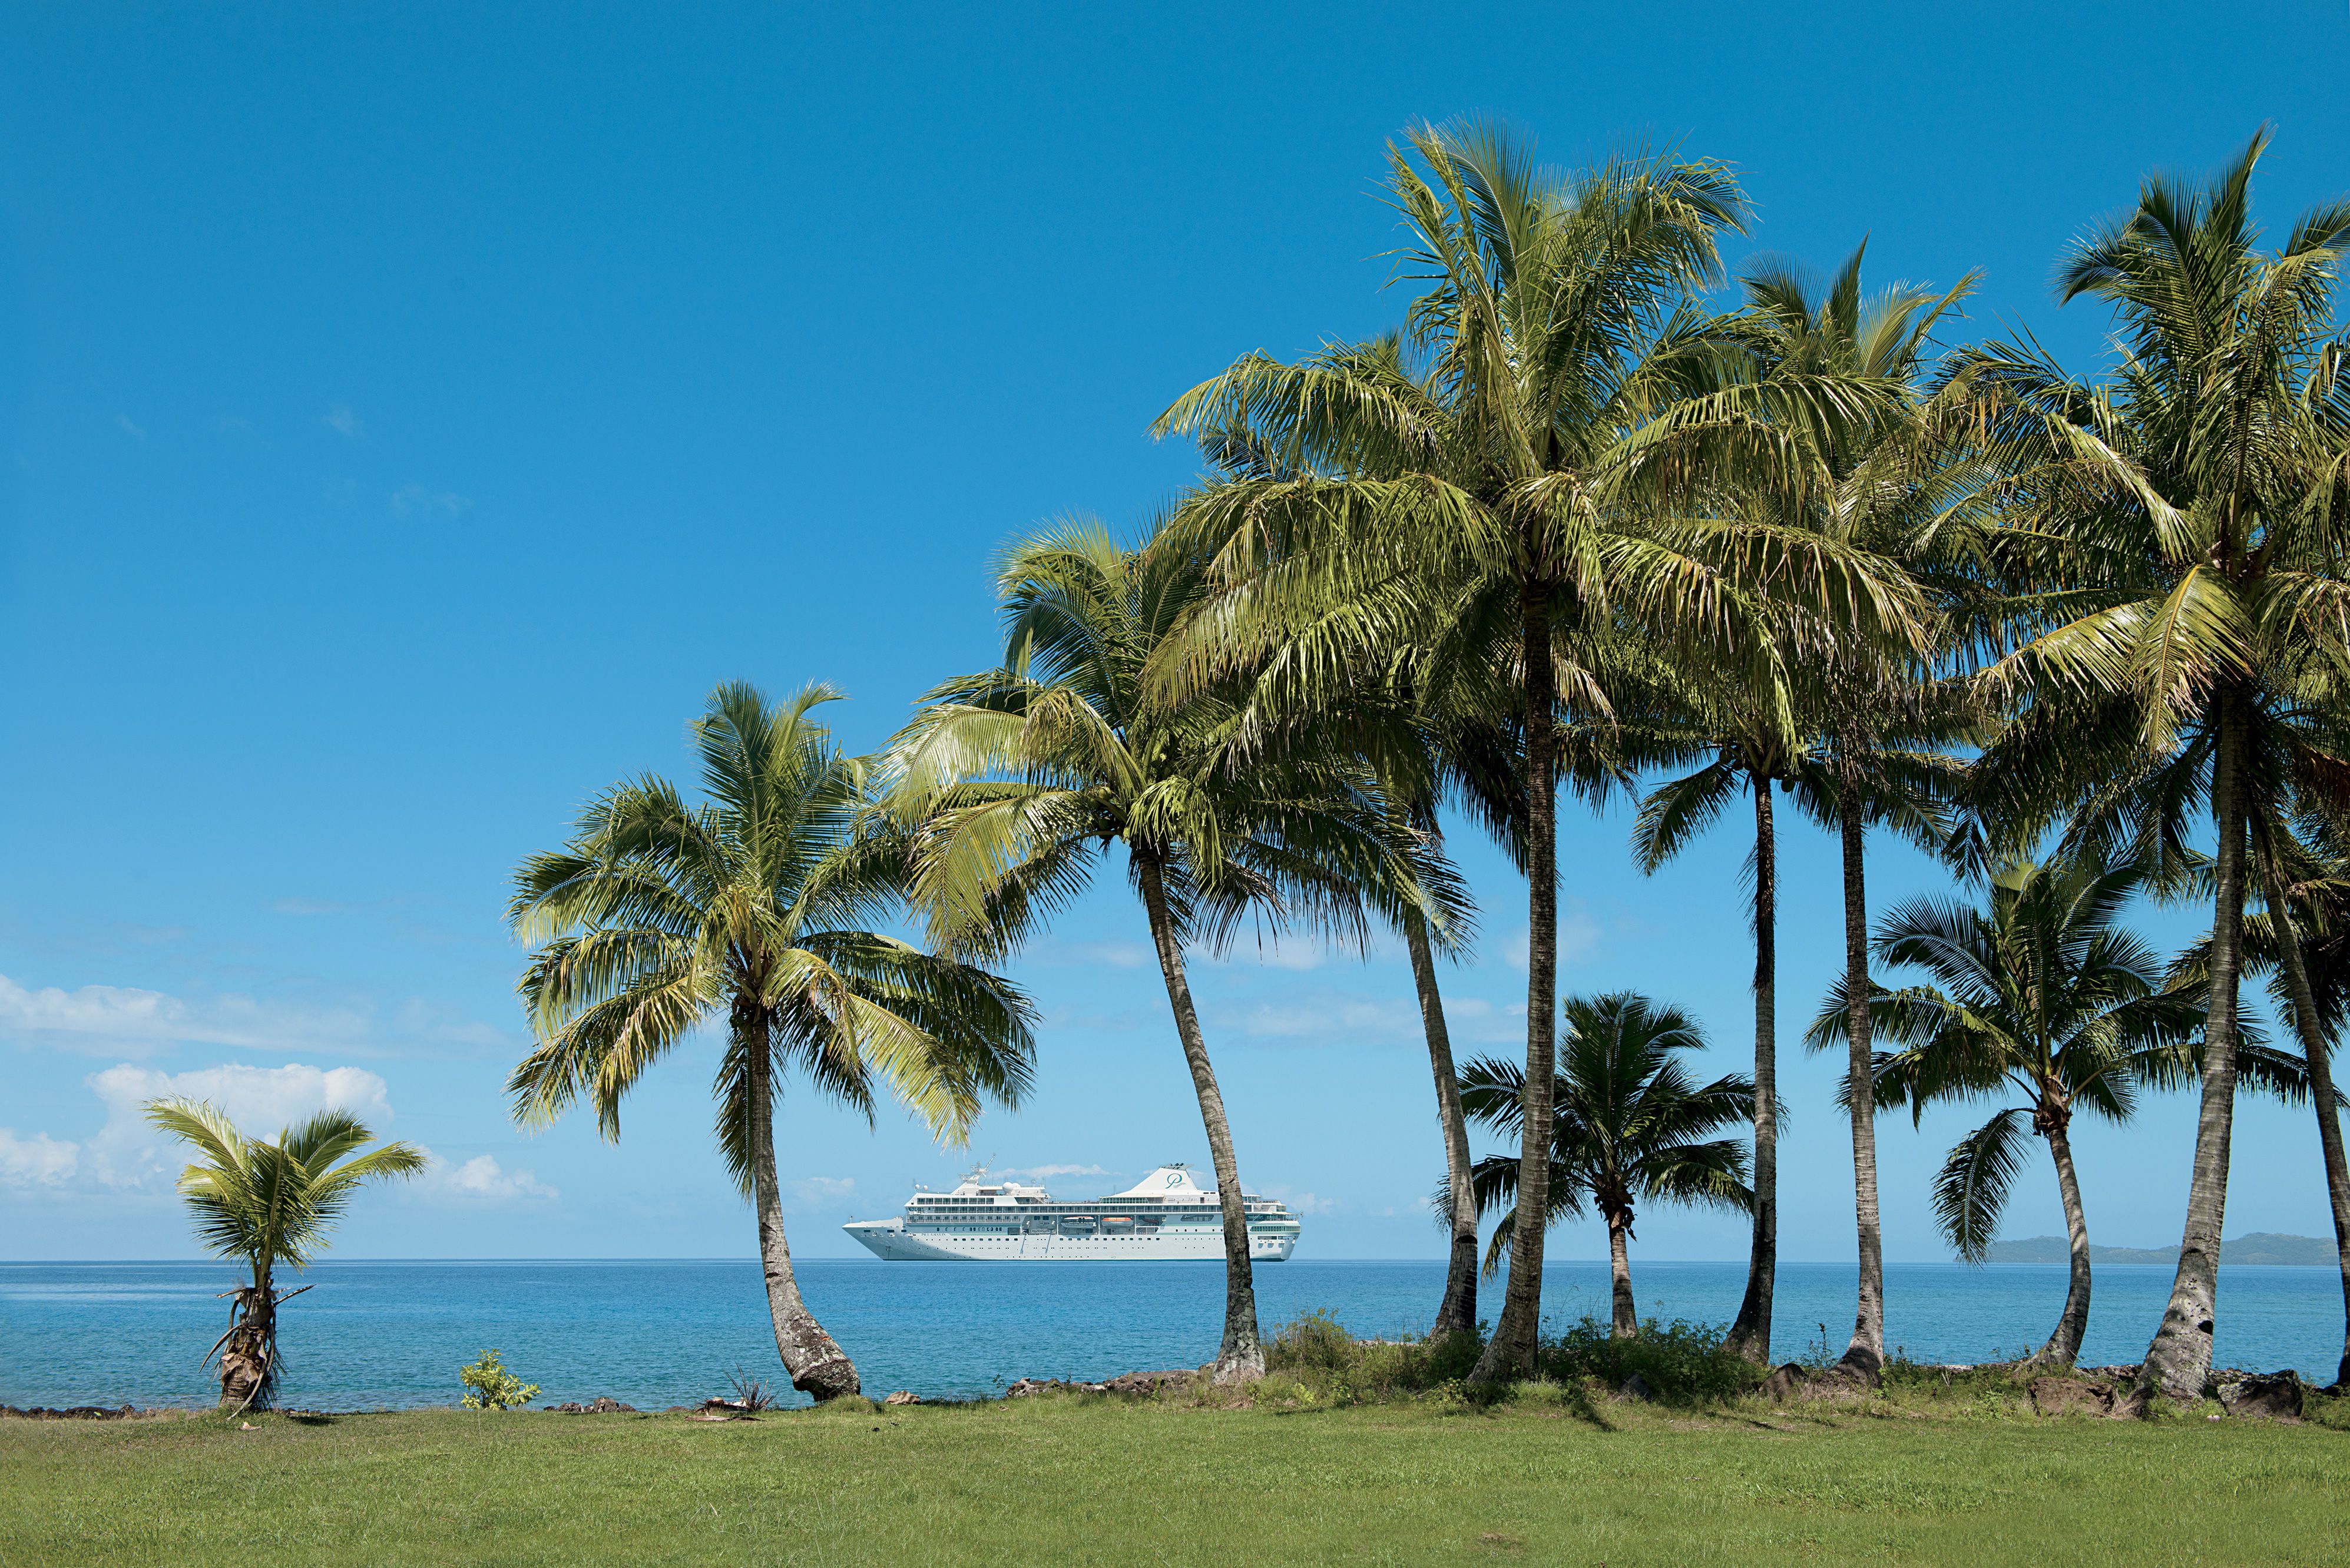 Fiji scenery, ship in background